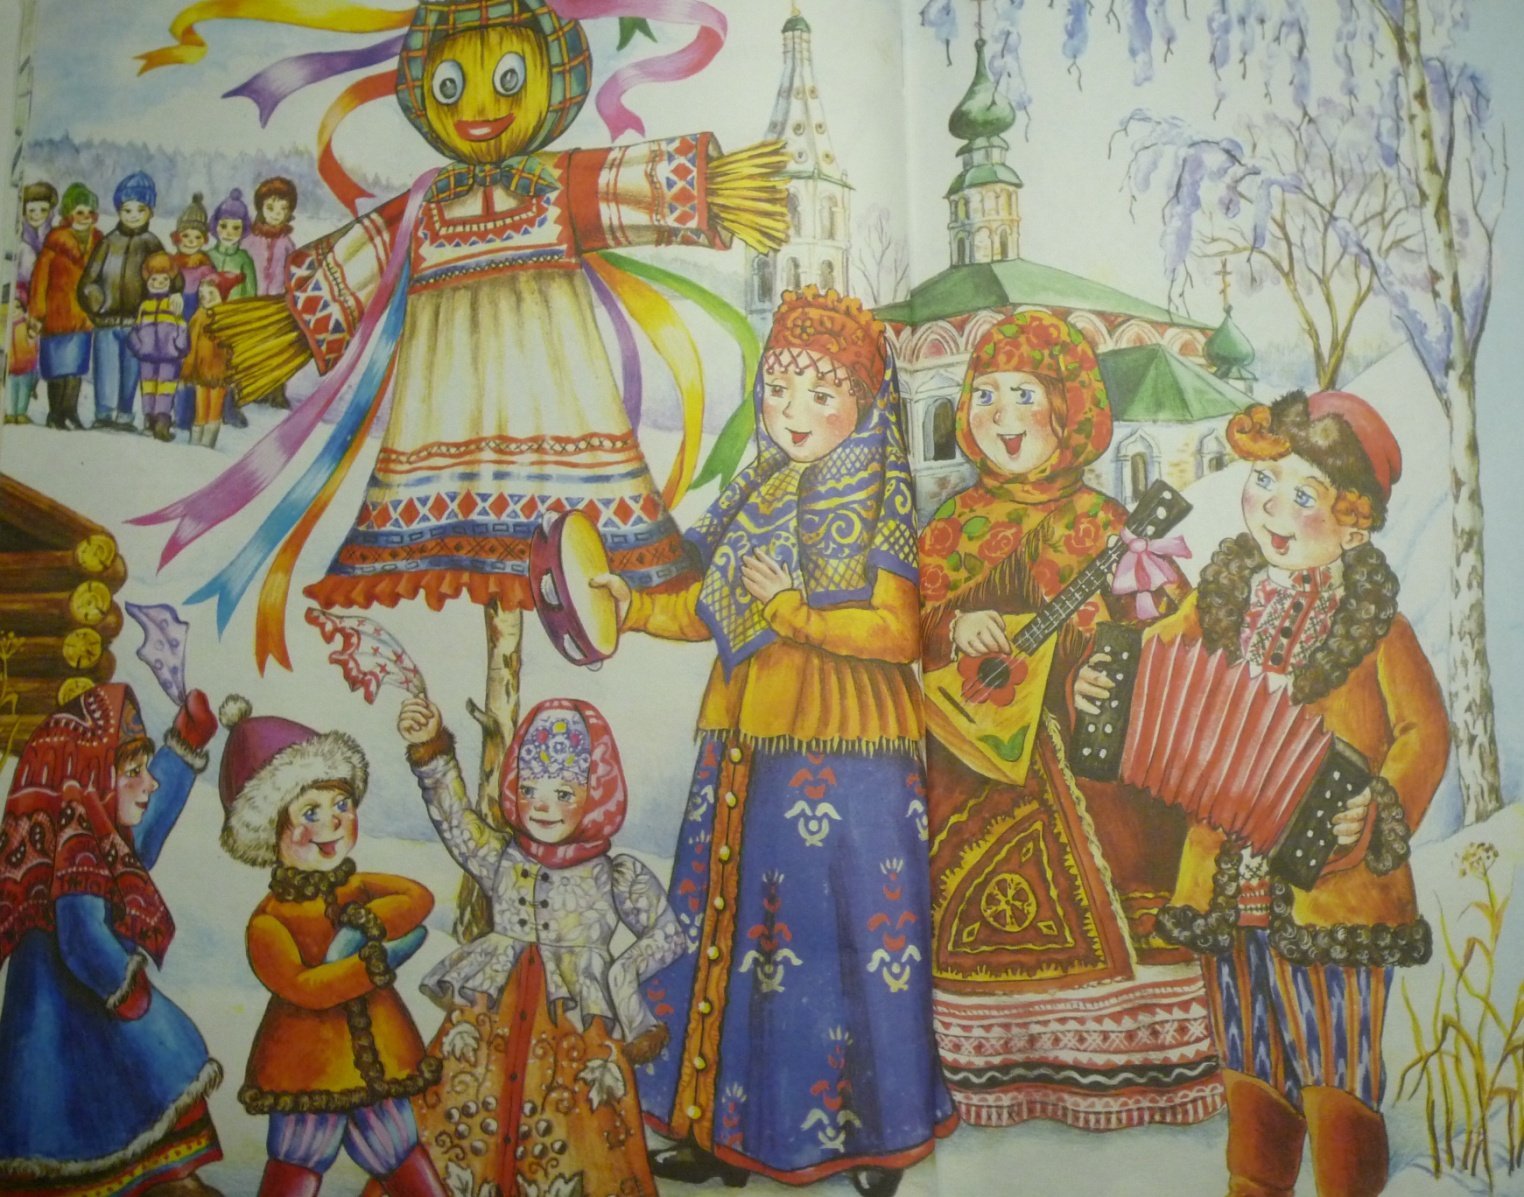 Песни на масленичные гуляния. Н. Фетисов - "широкая Масленица". Масленичные гуляния в древней Руси.